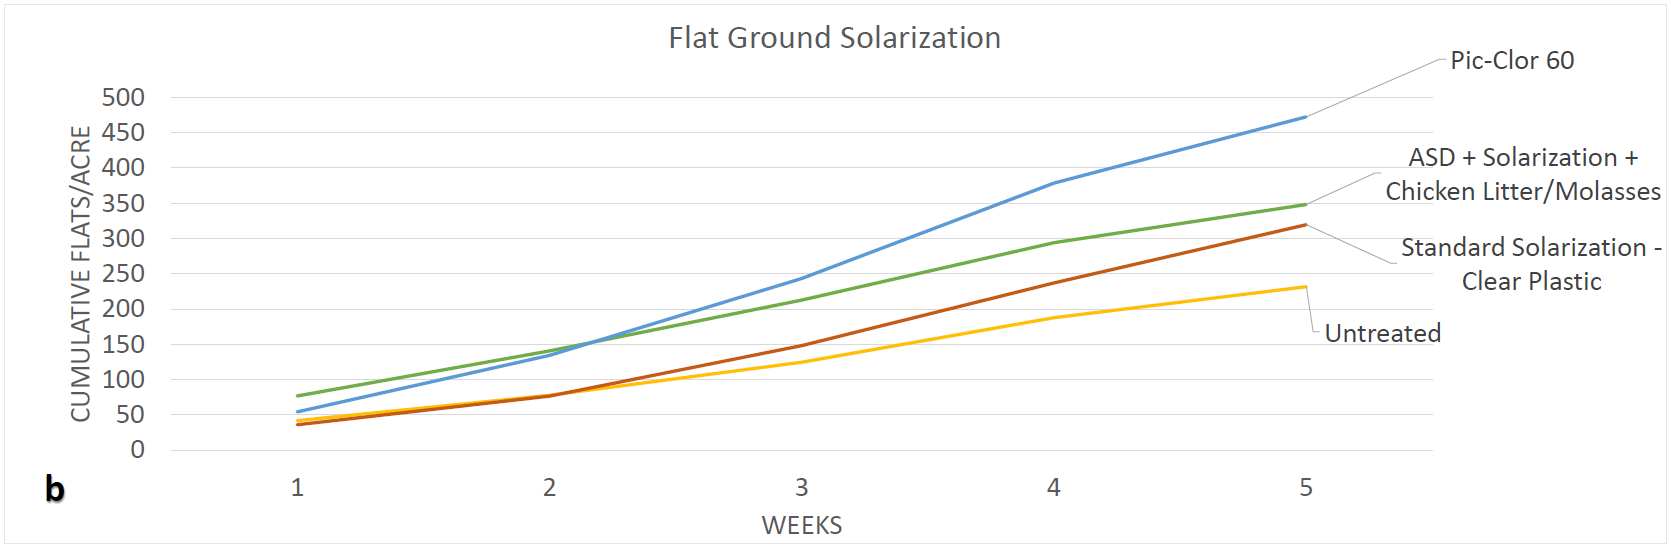 Ag Metrics Group - Flat Ground Solarization